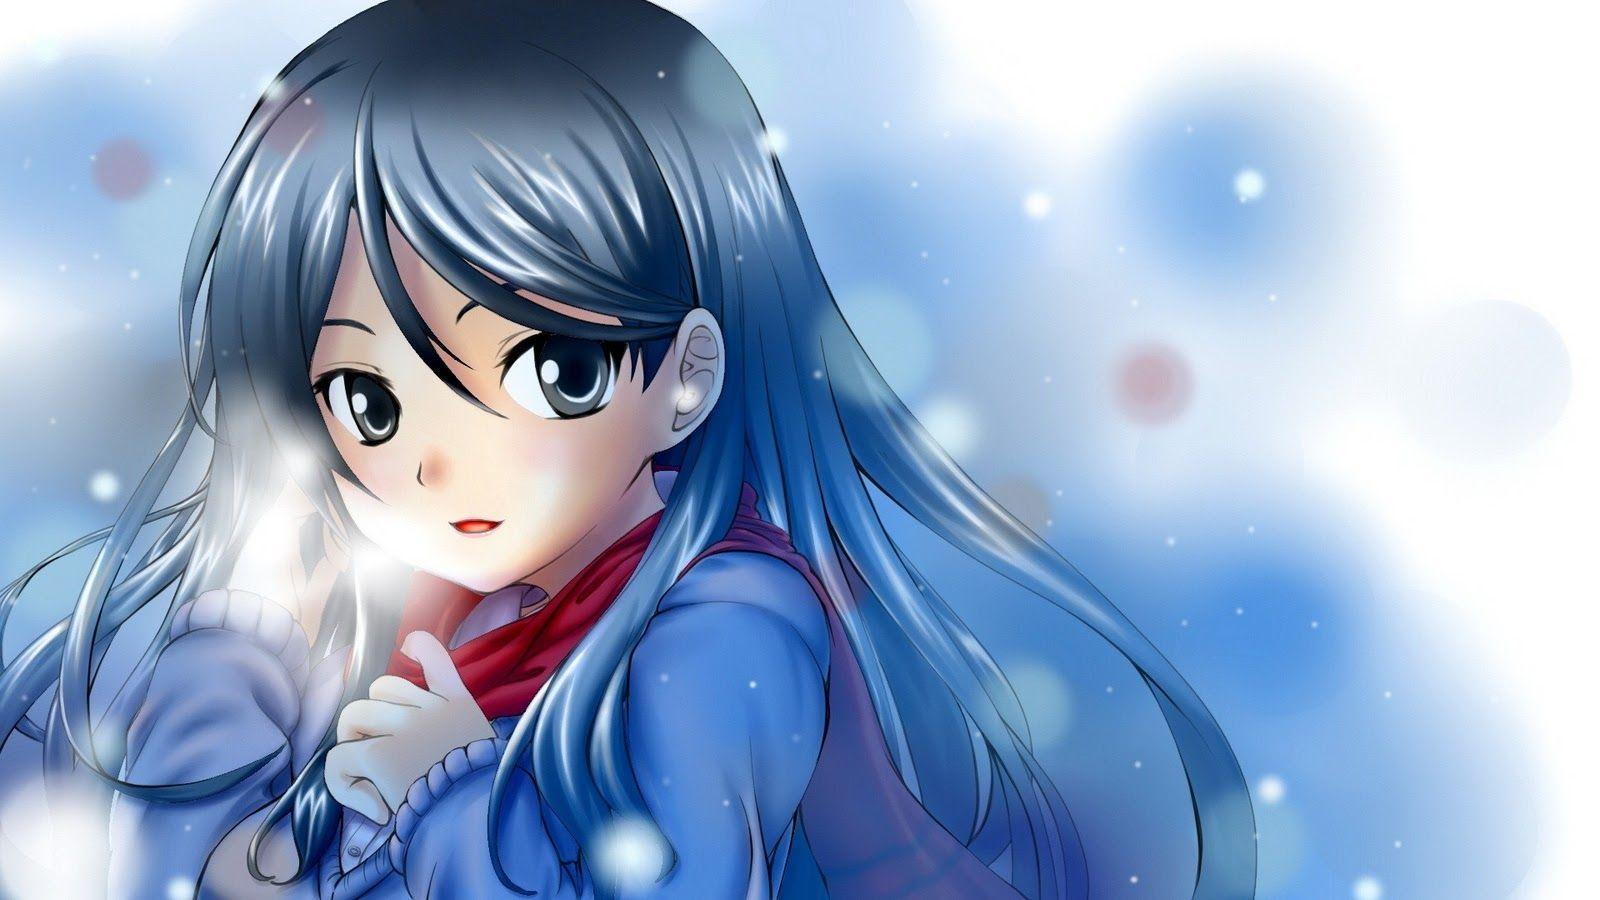 Anime Girl Wallpaper Hd Free Download gambar ke 14